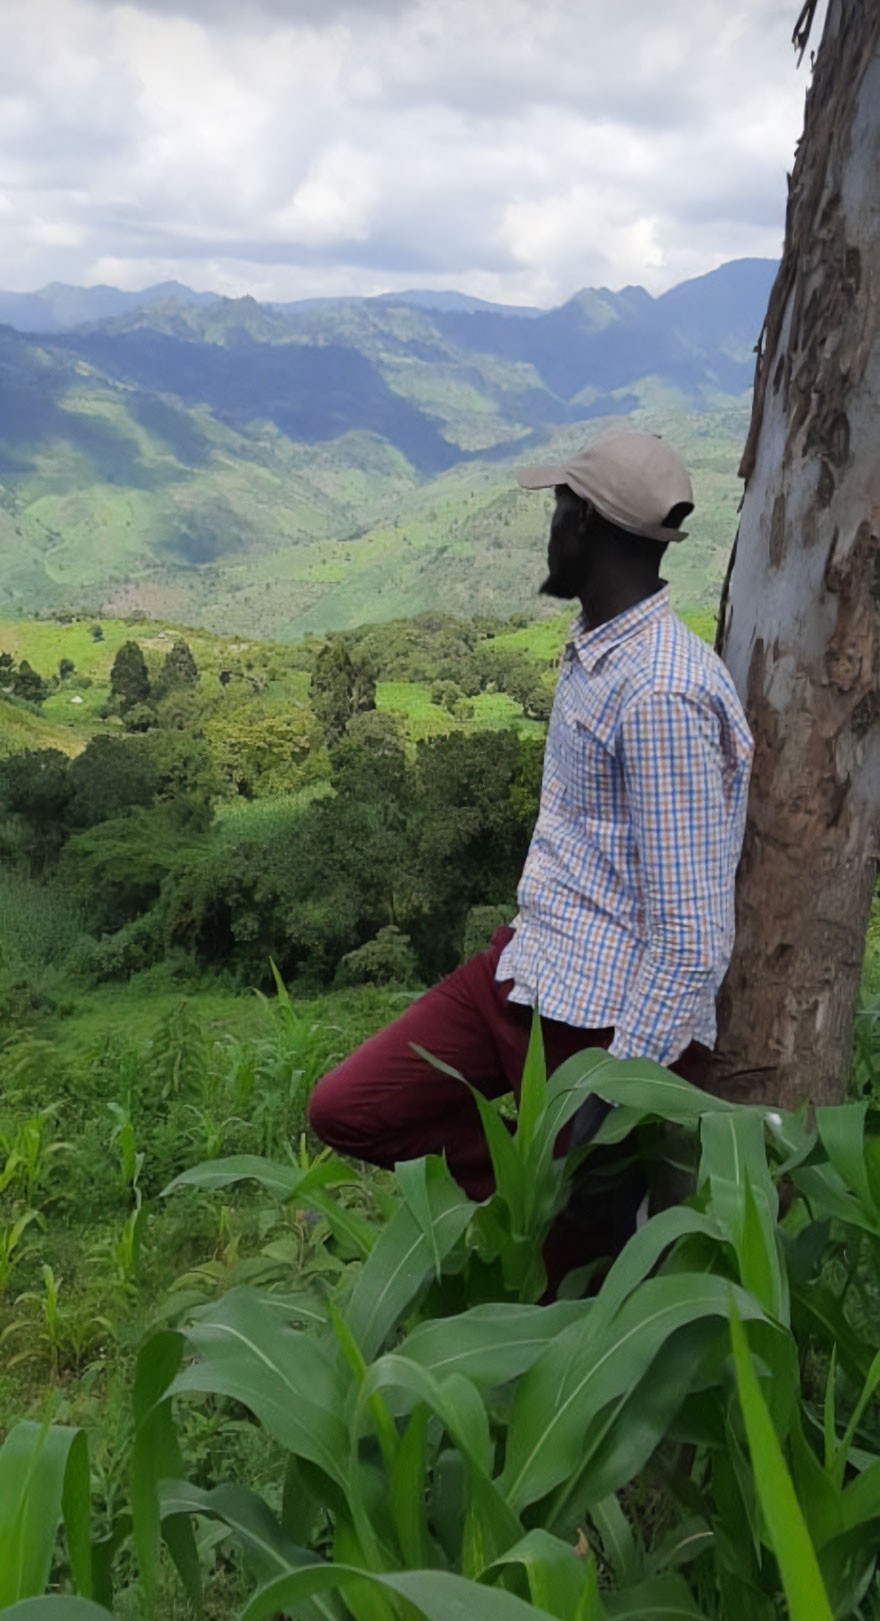 "Widok z ogrodu mojego dziadka w Kenii"